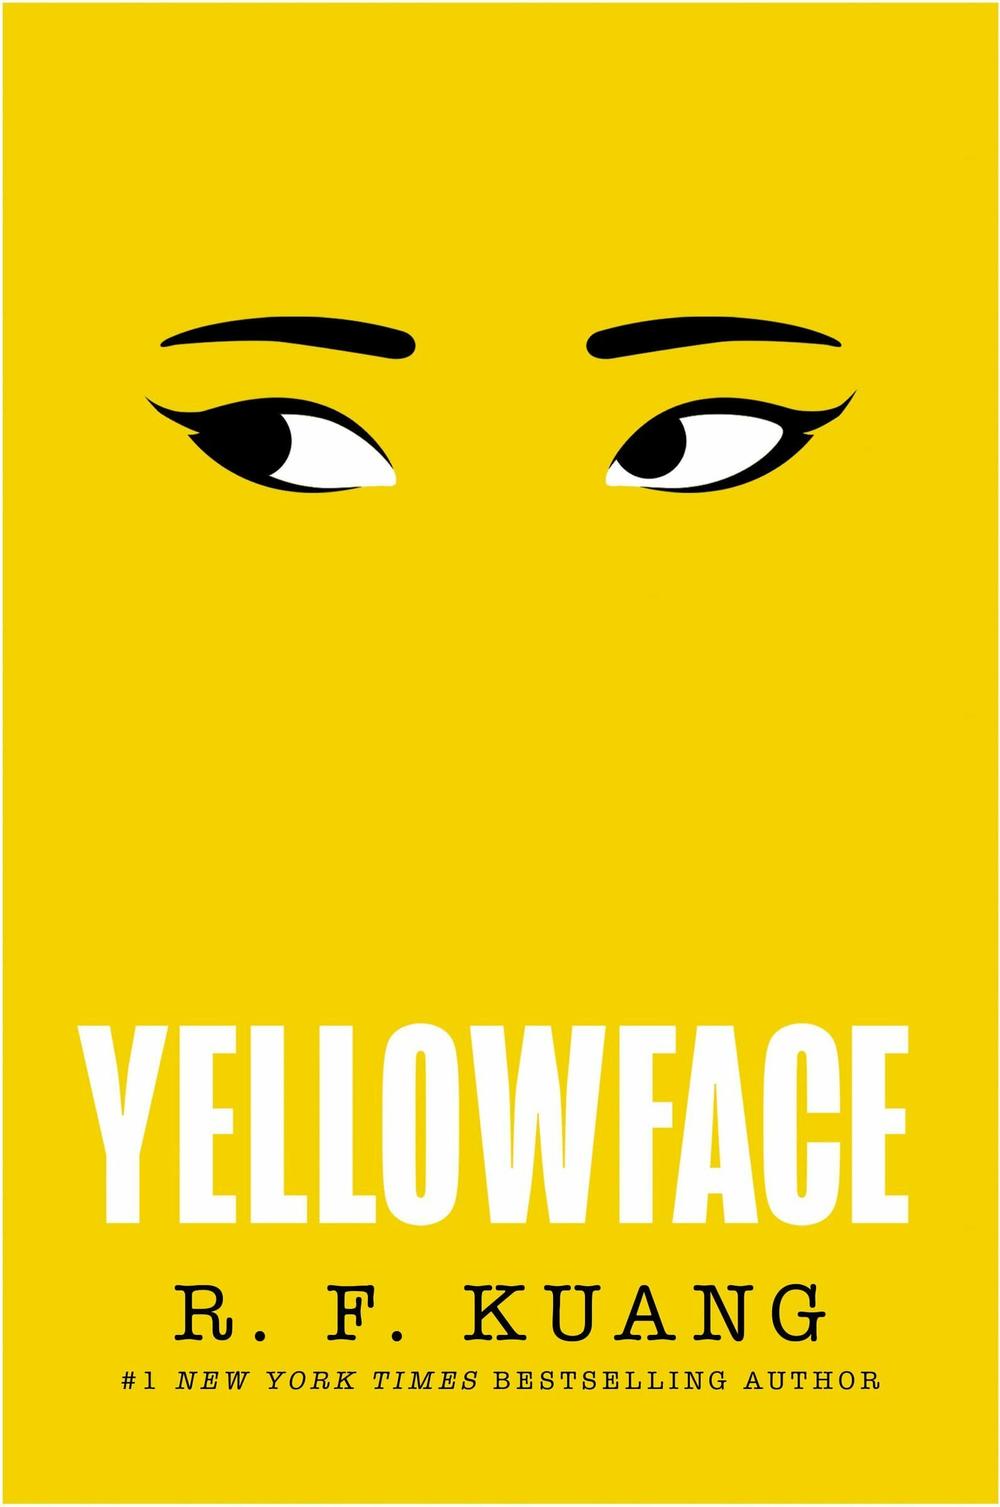 The cover of <em>Yellowface.</em>